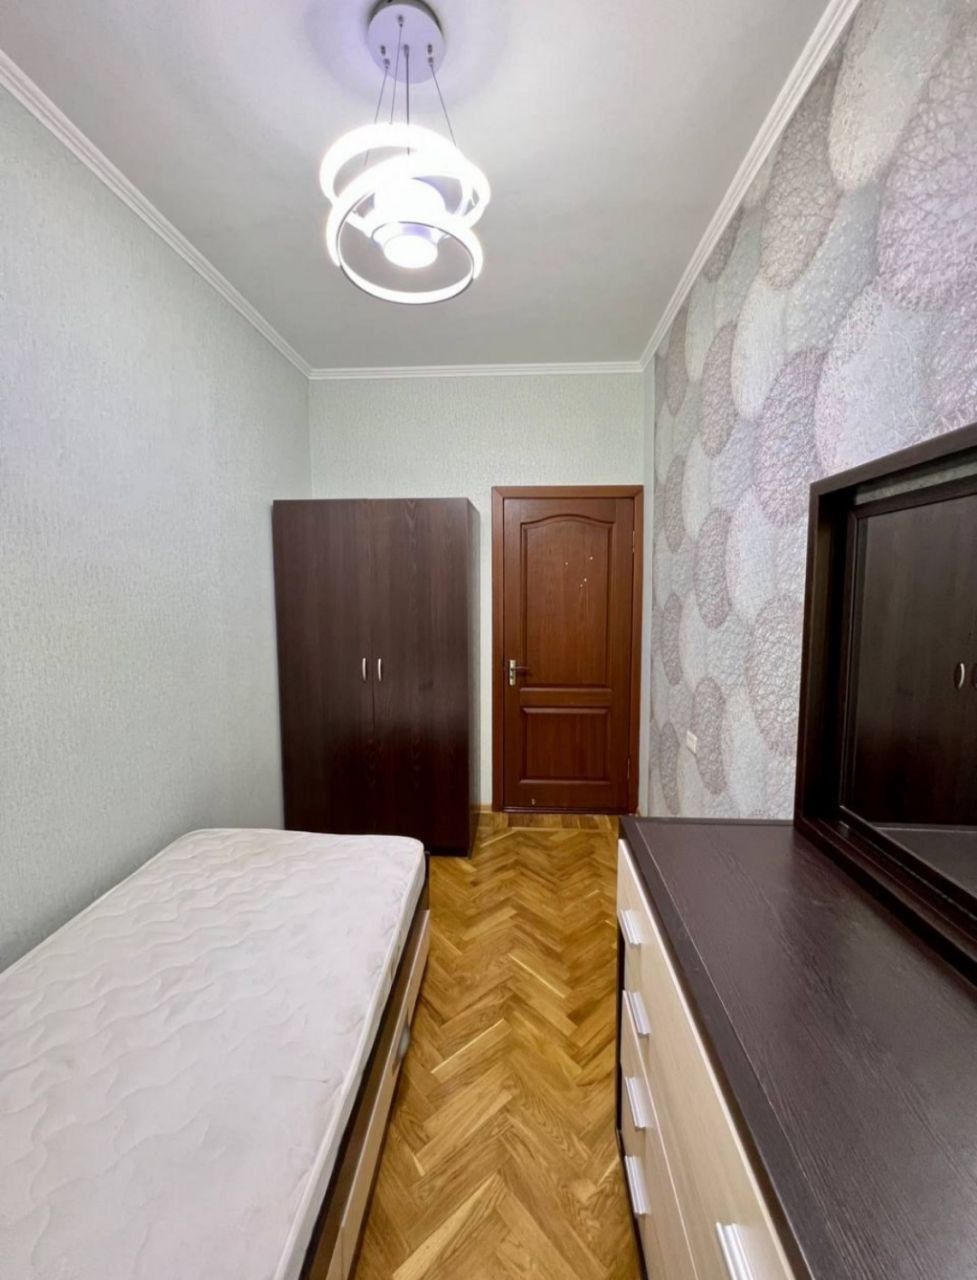 Аренда суточная квартира в Ташкенте. Kunlik kvartira